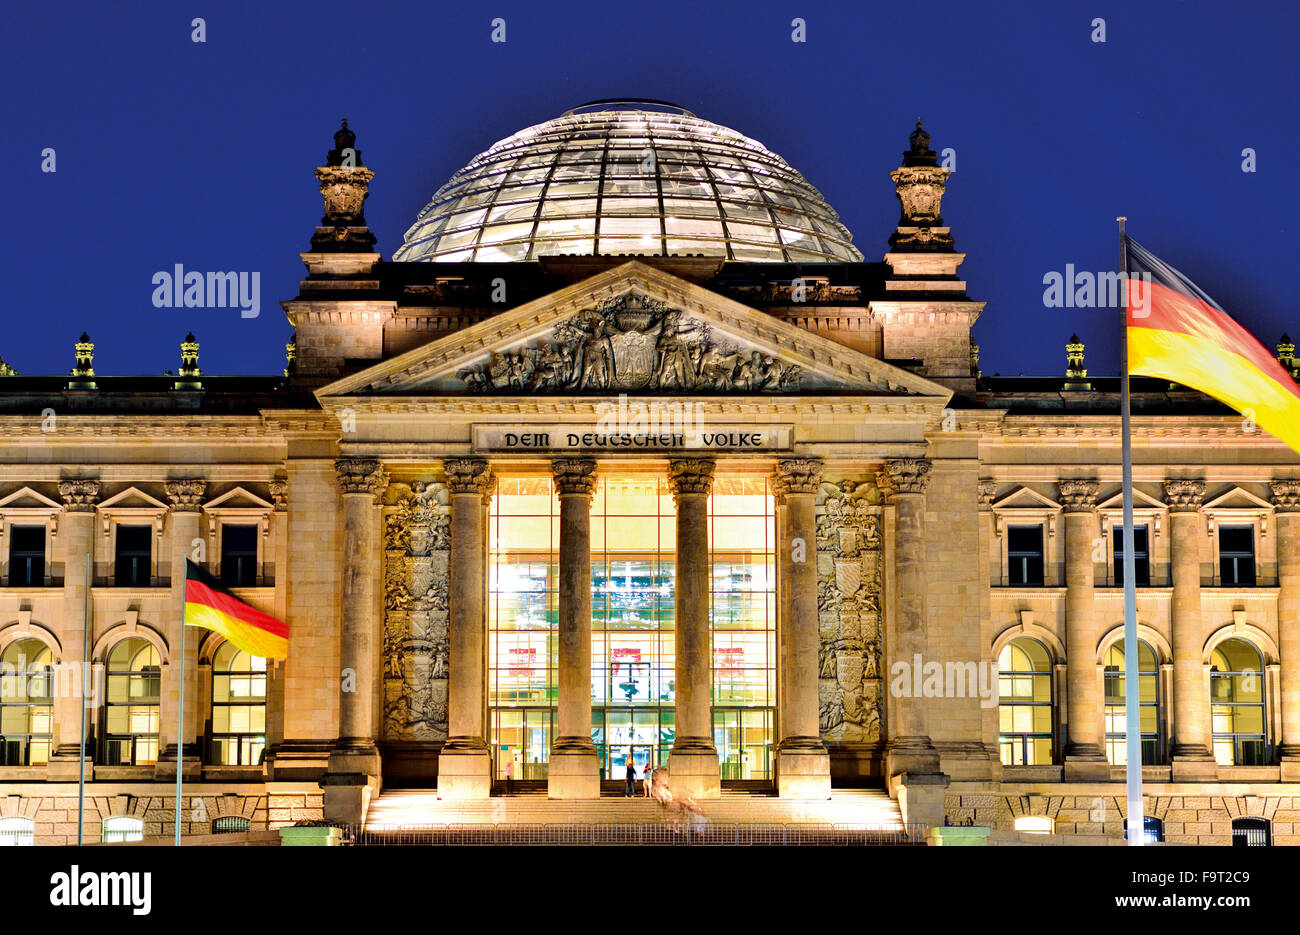 Alemania, Berlín: nocturna fachada iluminada de la Casa del Parlamento alemán 'Deutscher Reichstag' Foto de stock